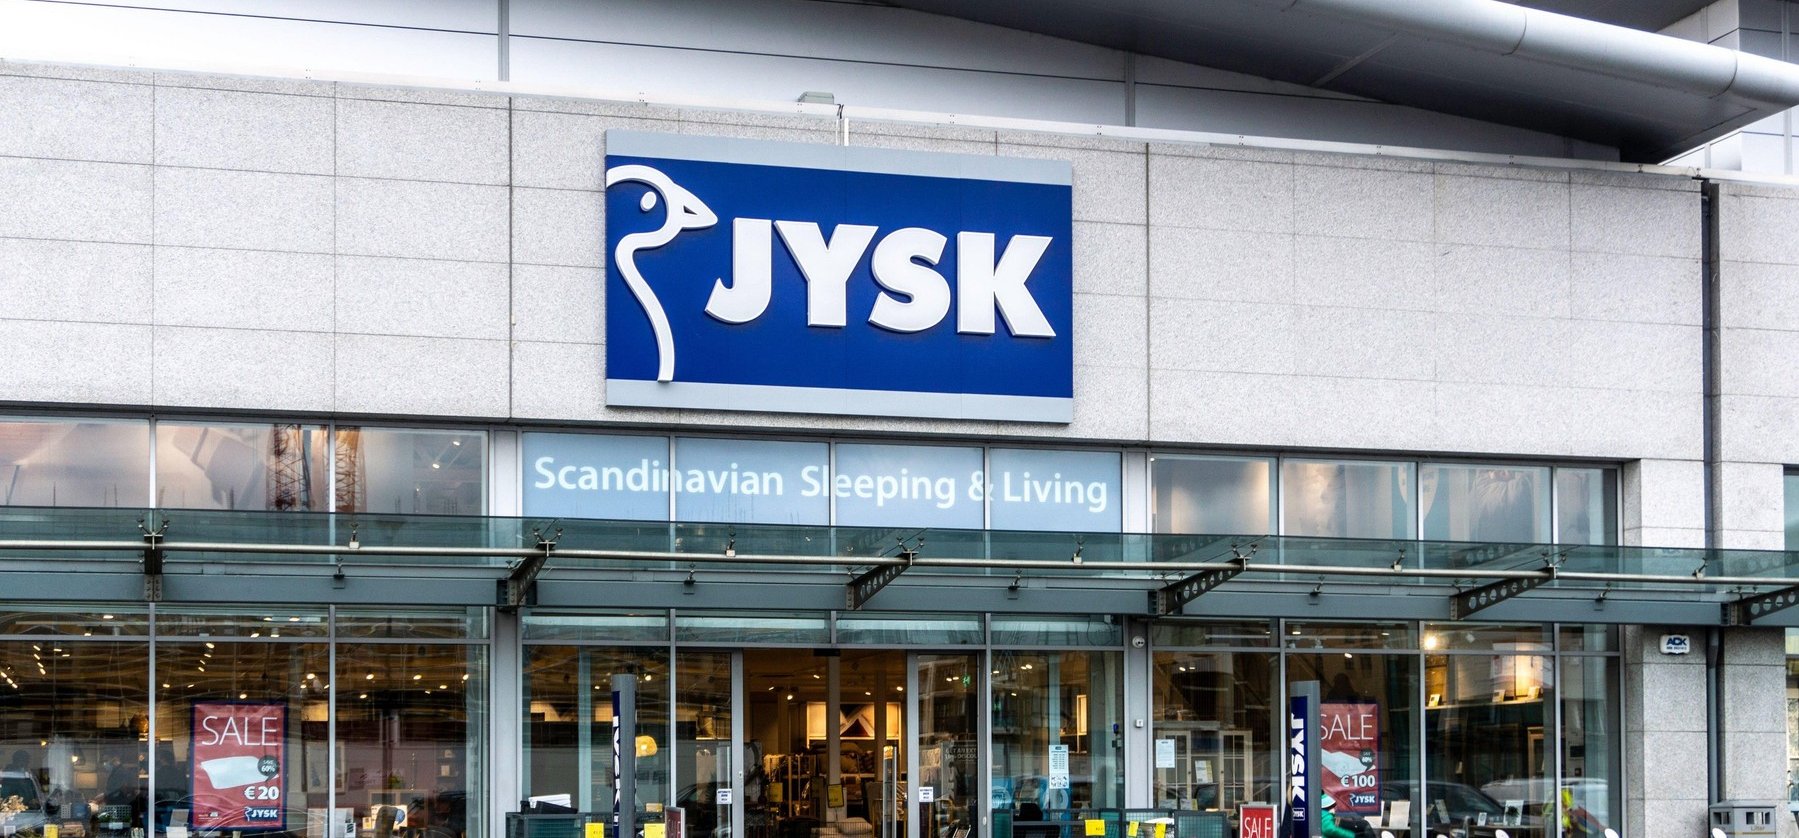 Mit jelent a Jysk márkanév valójában? A legtöbb magyar biztos, hogy nem erre gondolt volna